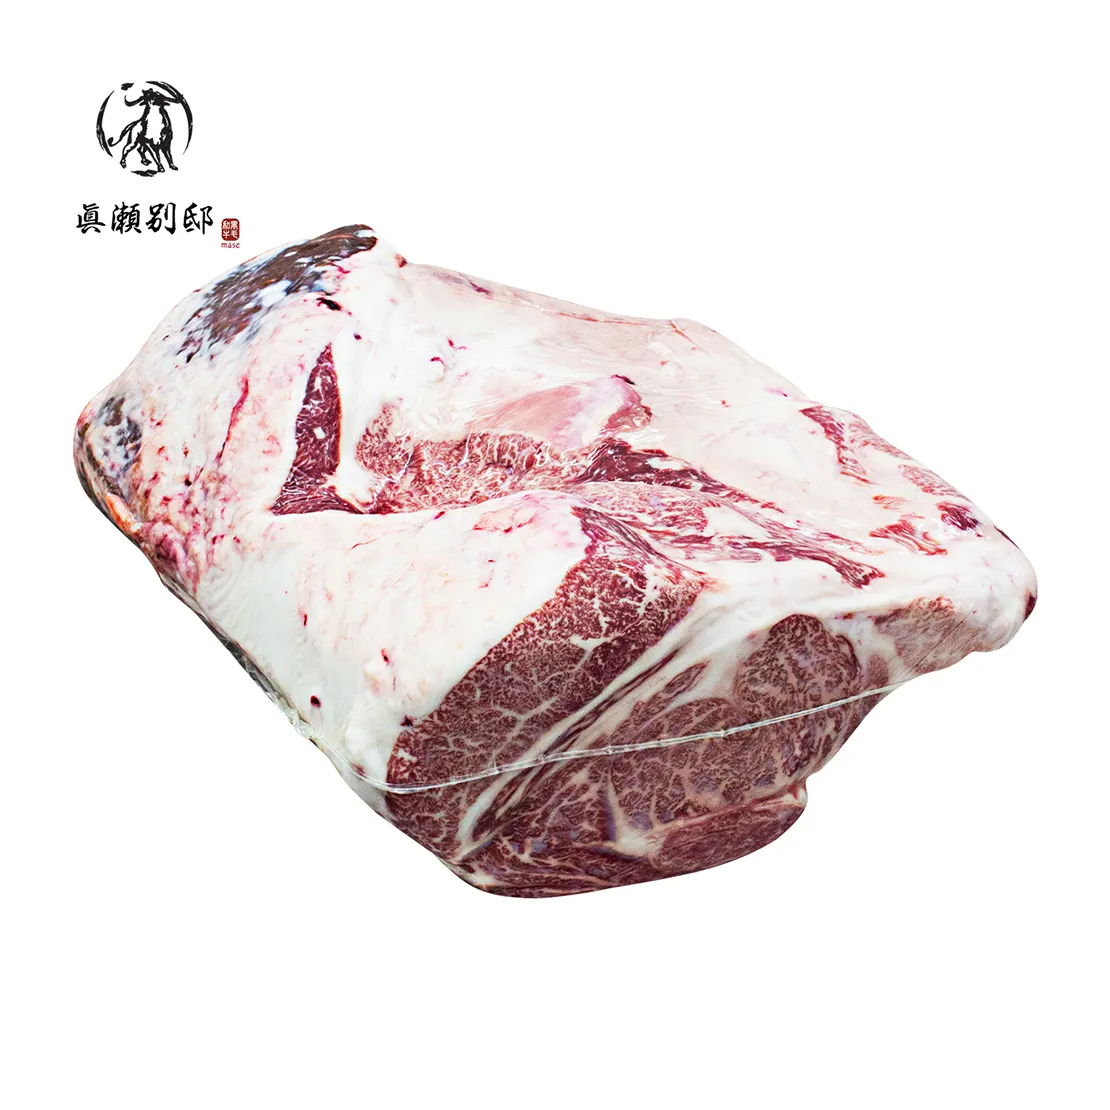 Высокое качество, жирный рулет, цена, японская говядина Wagyu, свежее мясо